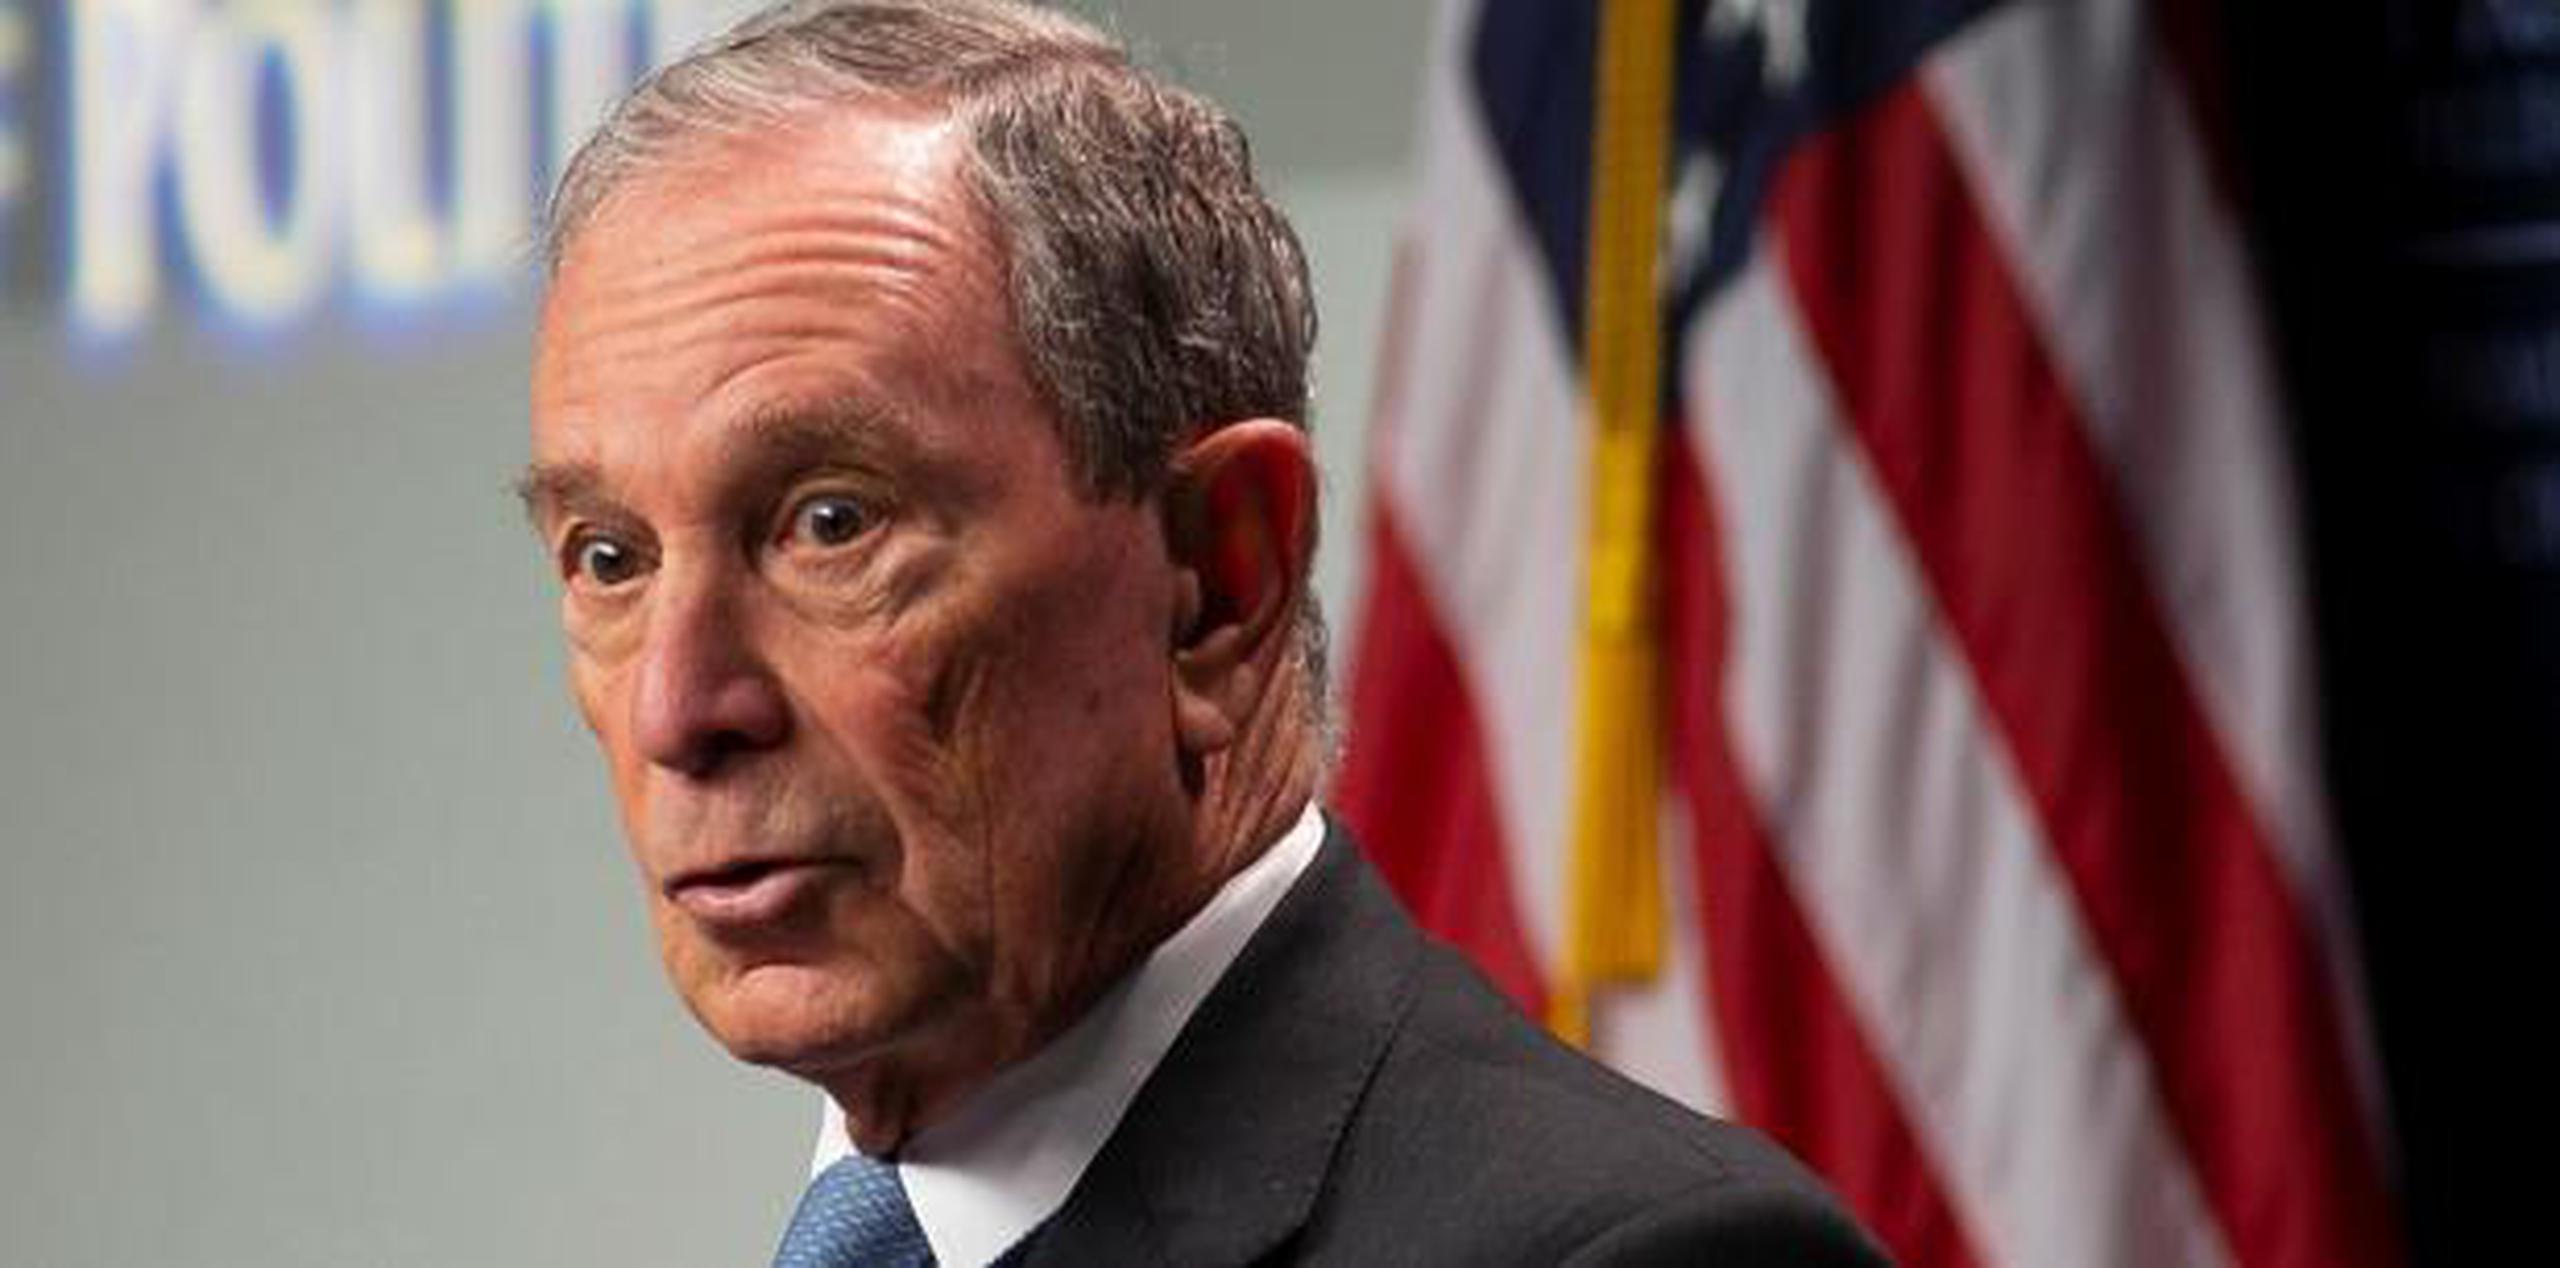 En las últimas semanas, Bloomberg ya había llevado a cabo gestiones para poder aparecer en las papeletas en varios estados, pero hasta este domingo no había dado el paso al frente que lo convierte en un candidato oficial. (EFE)